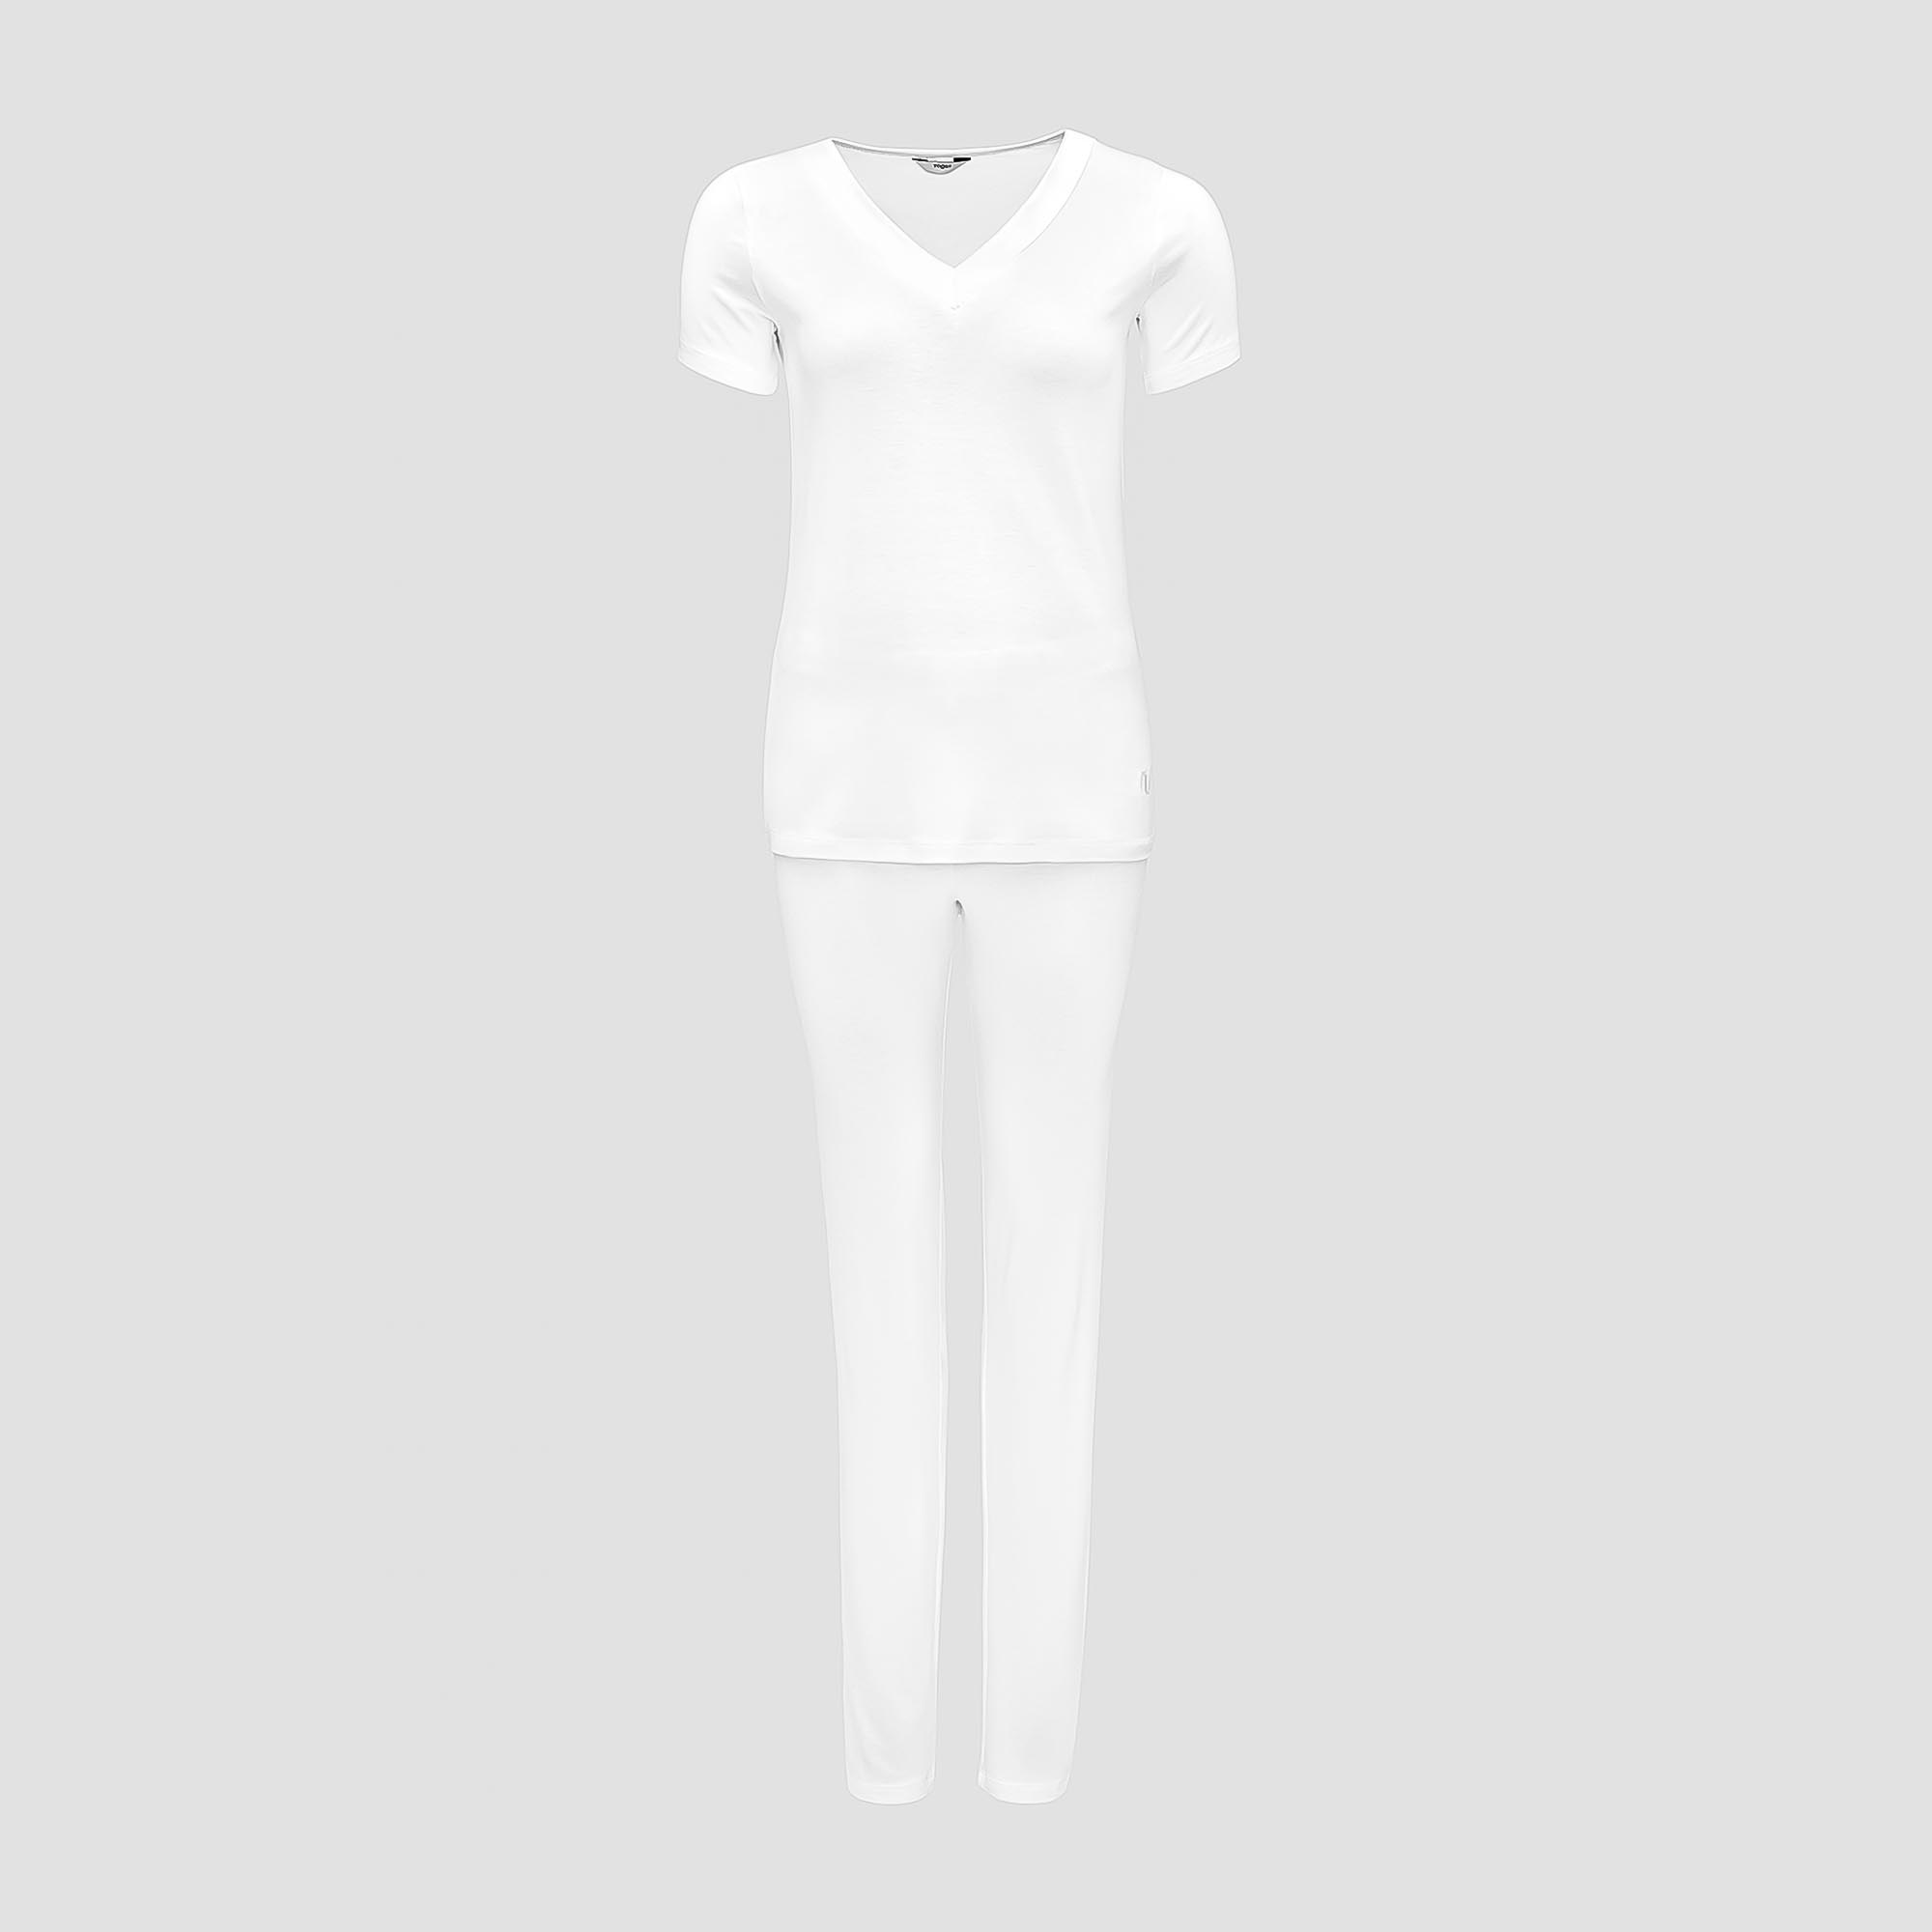 Пижама Togas Ингелла белая женская XL(50) 2 предмета пижама сорочка брюки